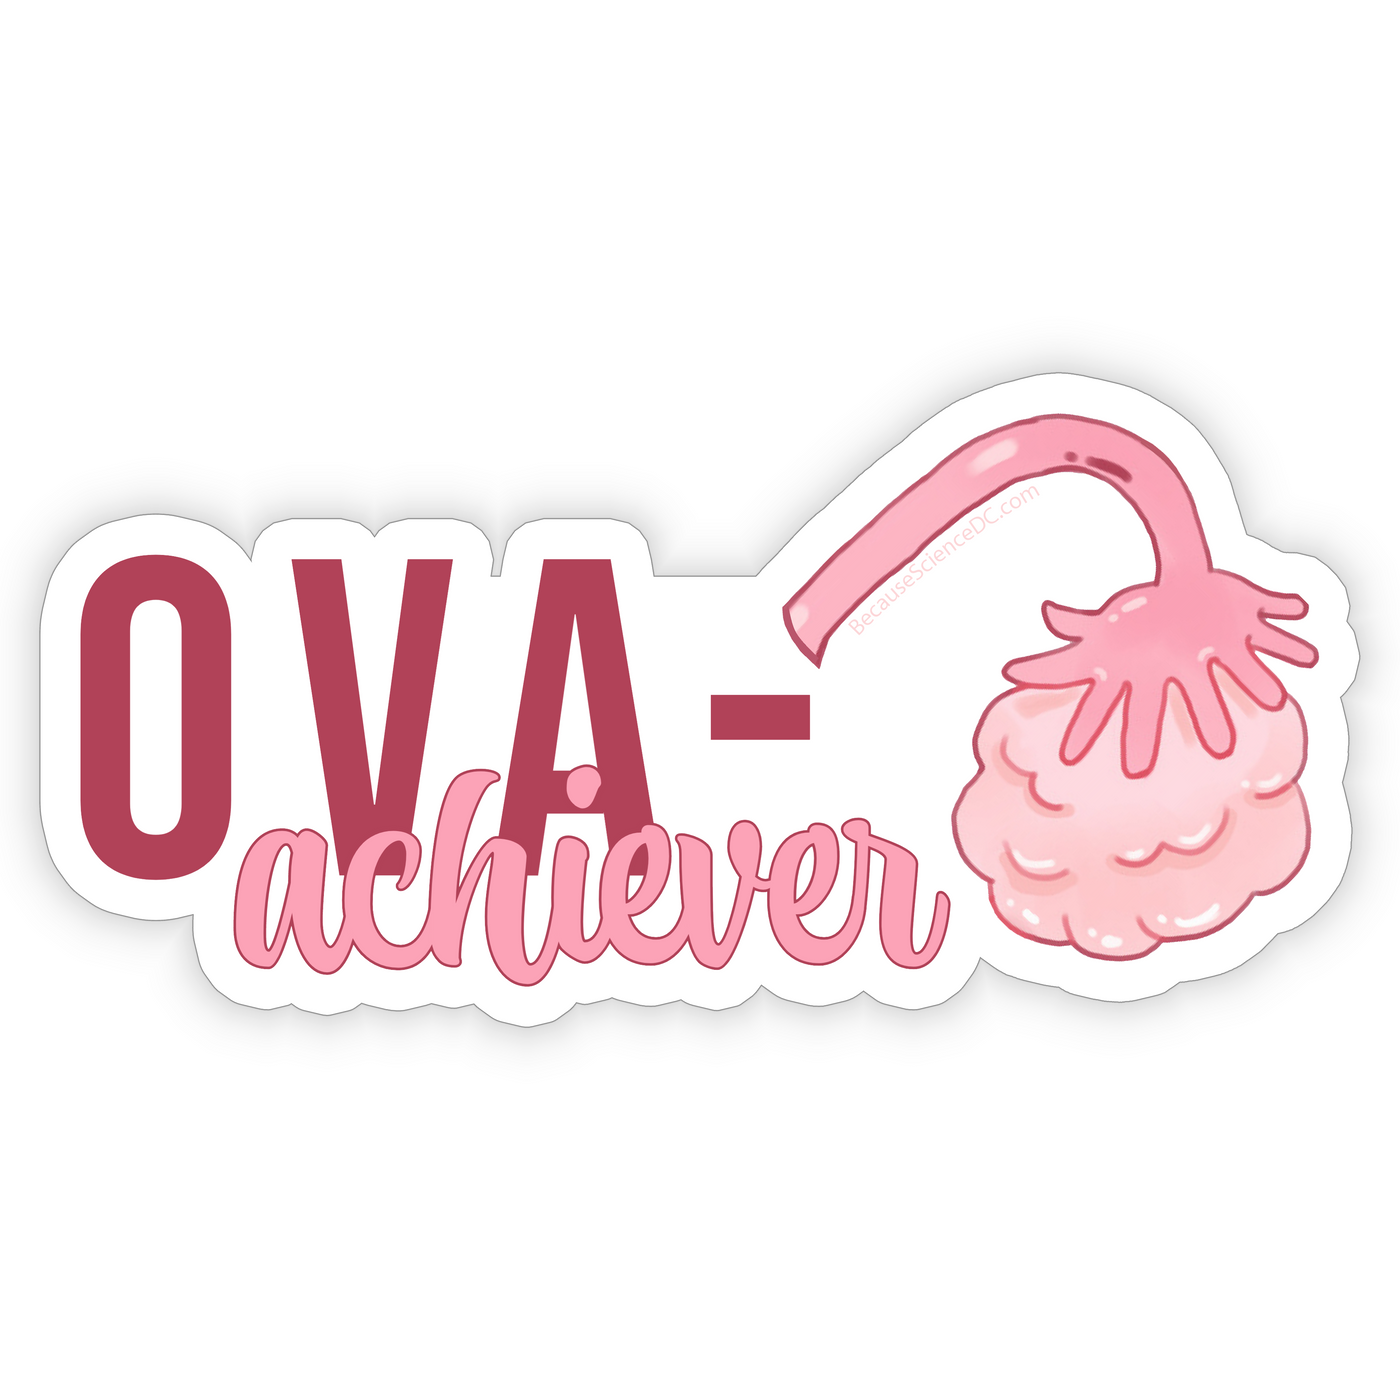 Ova-Achiever - Vinyl Sticker